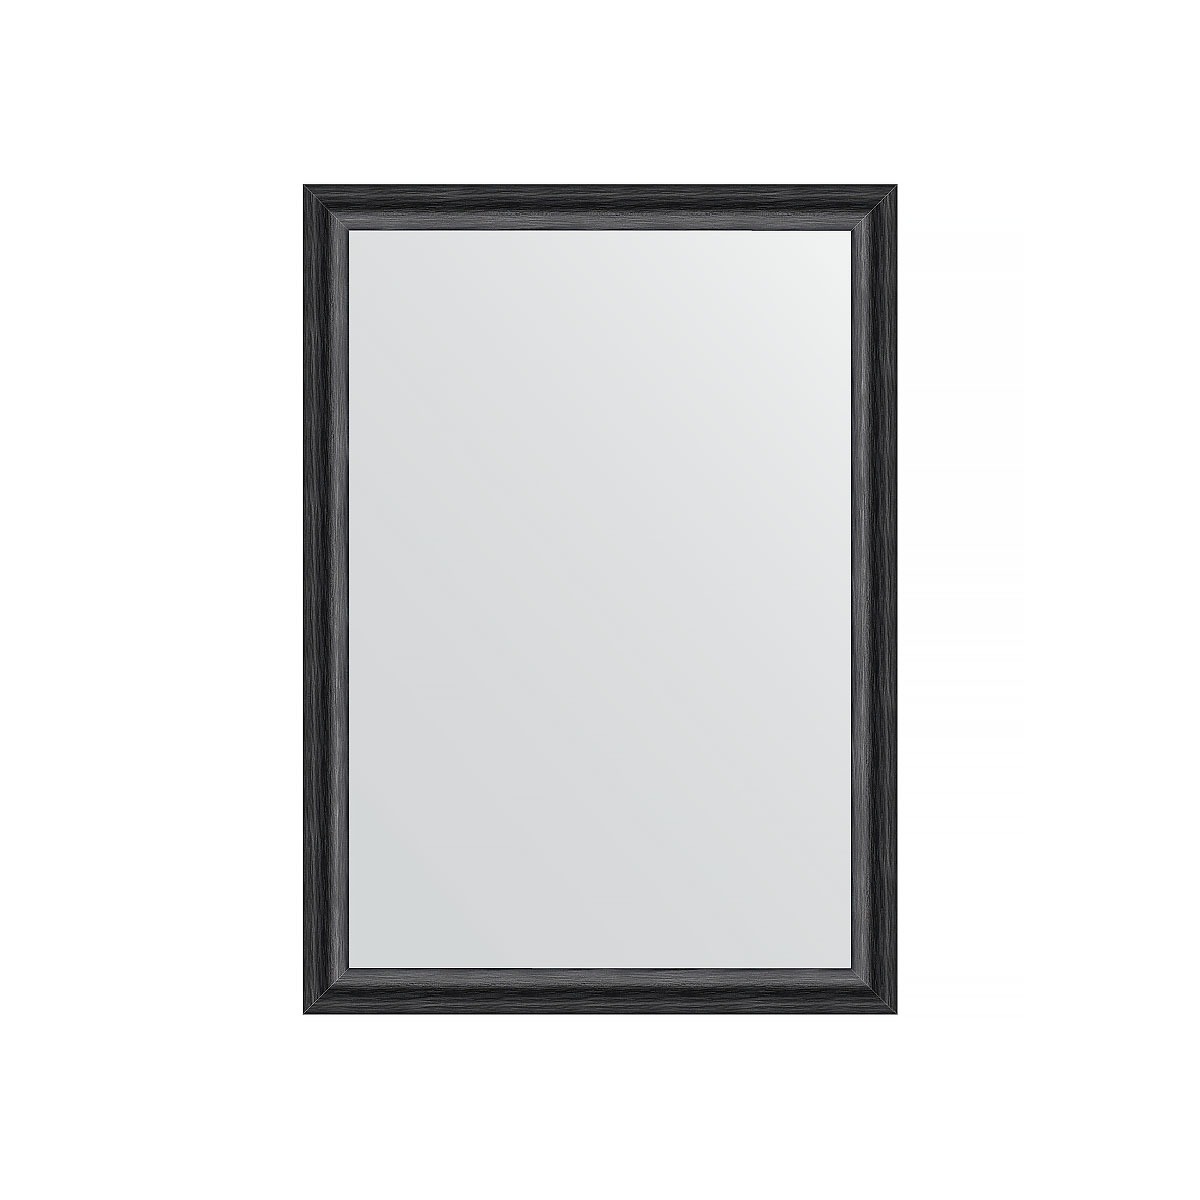 Зеркало в багетной раме Evoform черный дуб 37 мм 50х70 см зеркало evoform со шлифованной кромкой 50х70 см